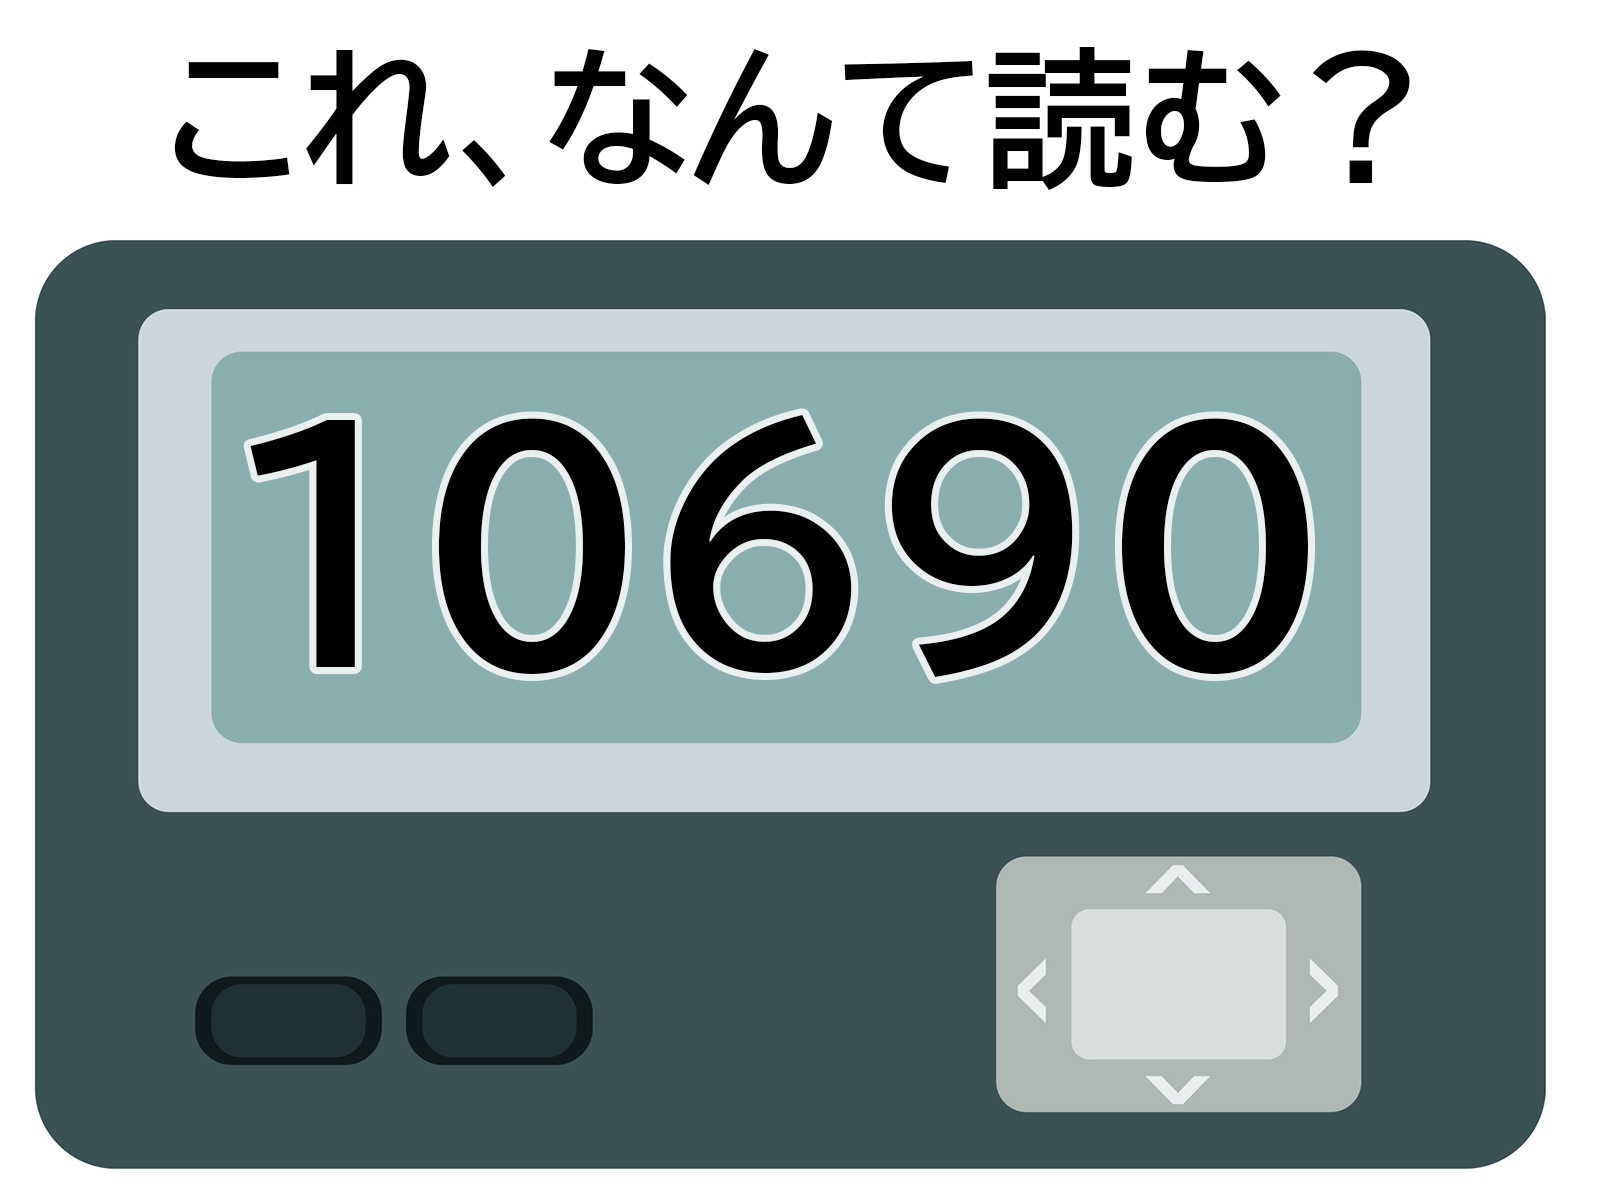 「10690」はなんて読む？ 電話してほしい…？【ポケベル暗号クイズ】